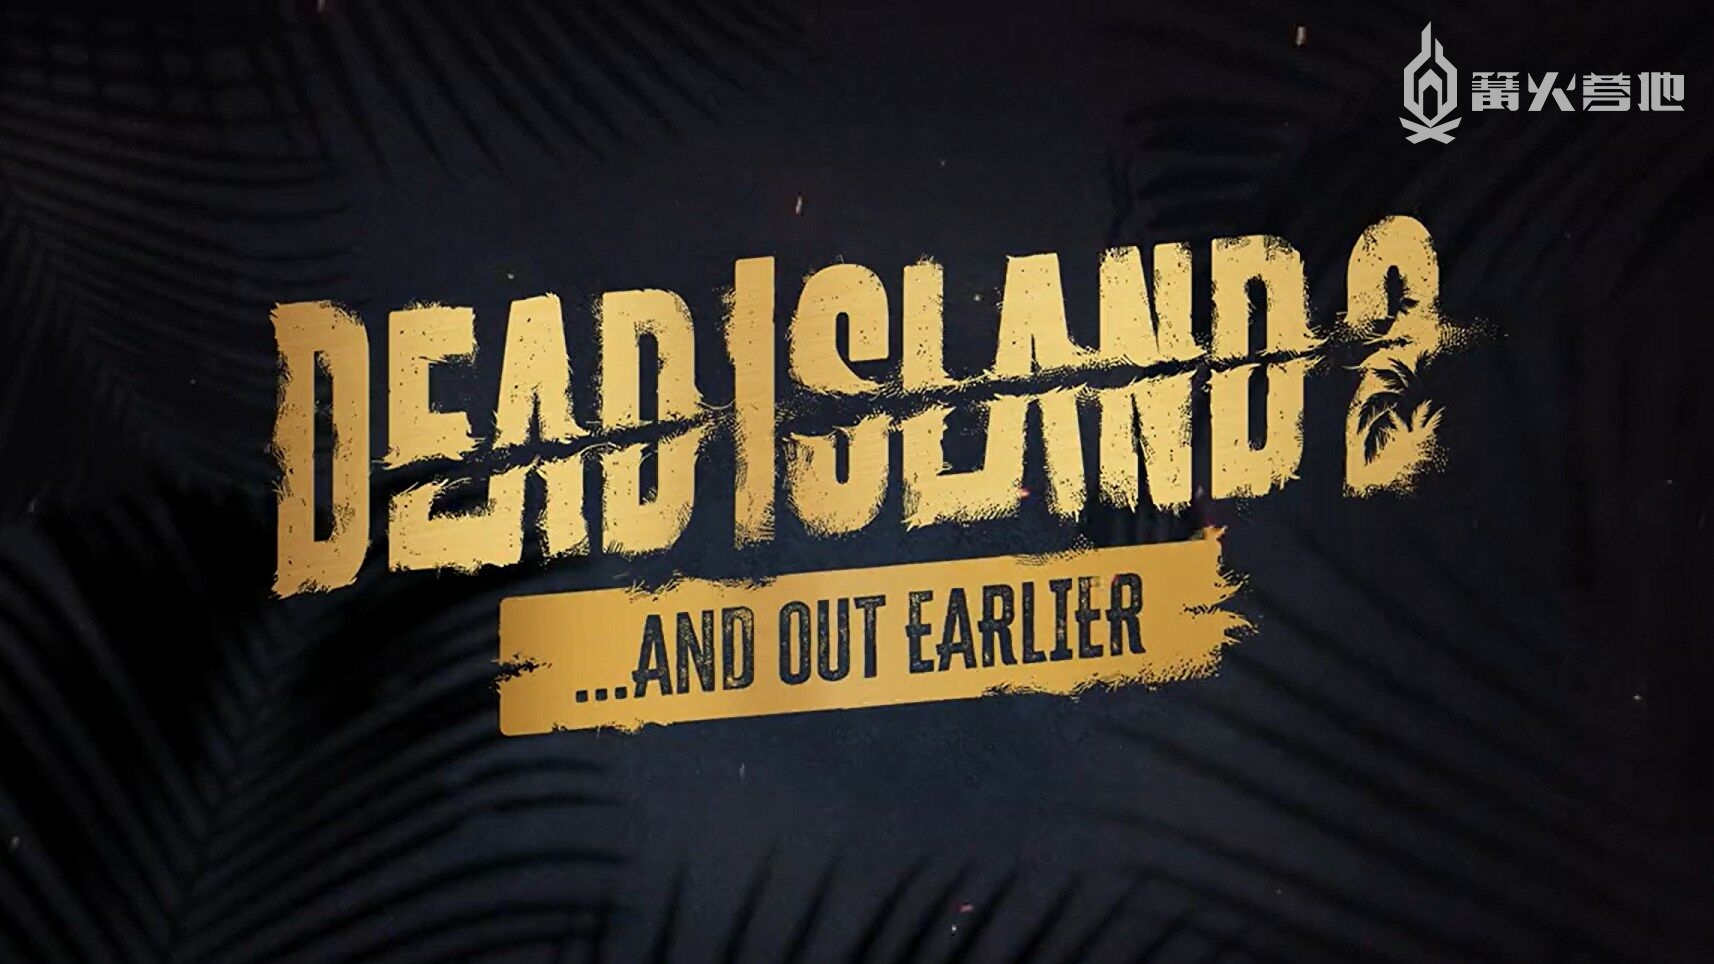 《死亡岛 2》将提前一周到 4 月 21 日推出